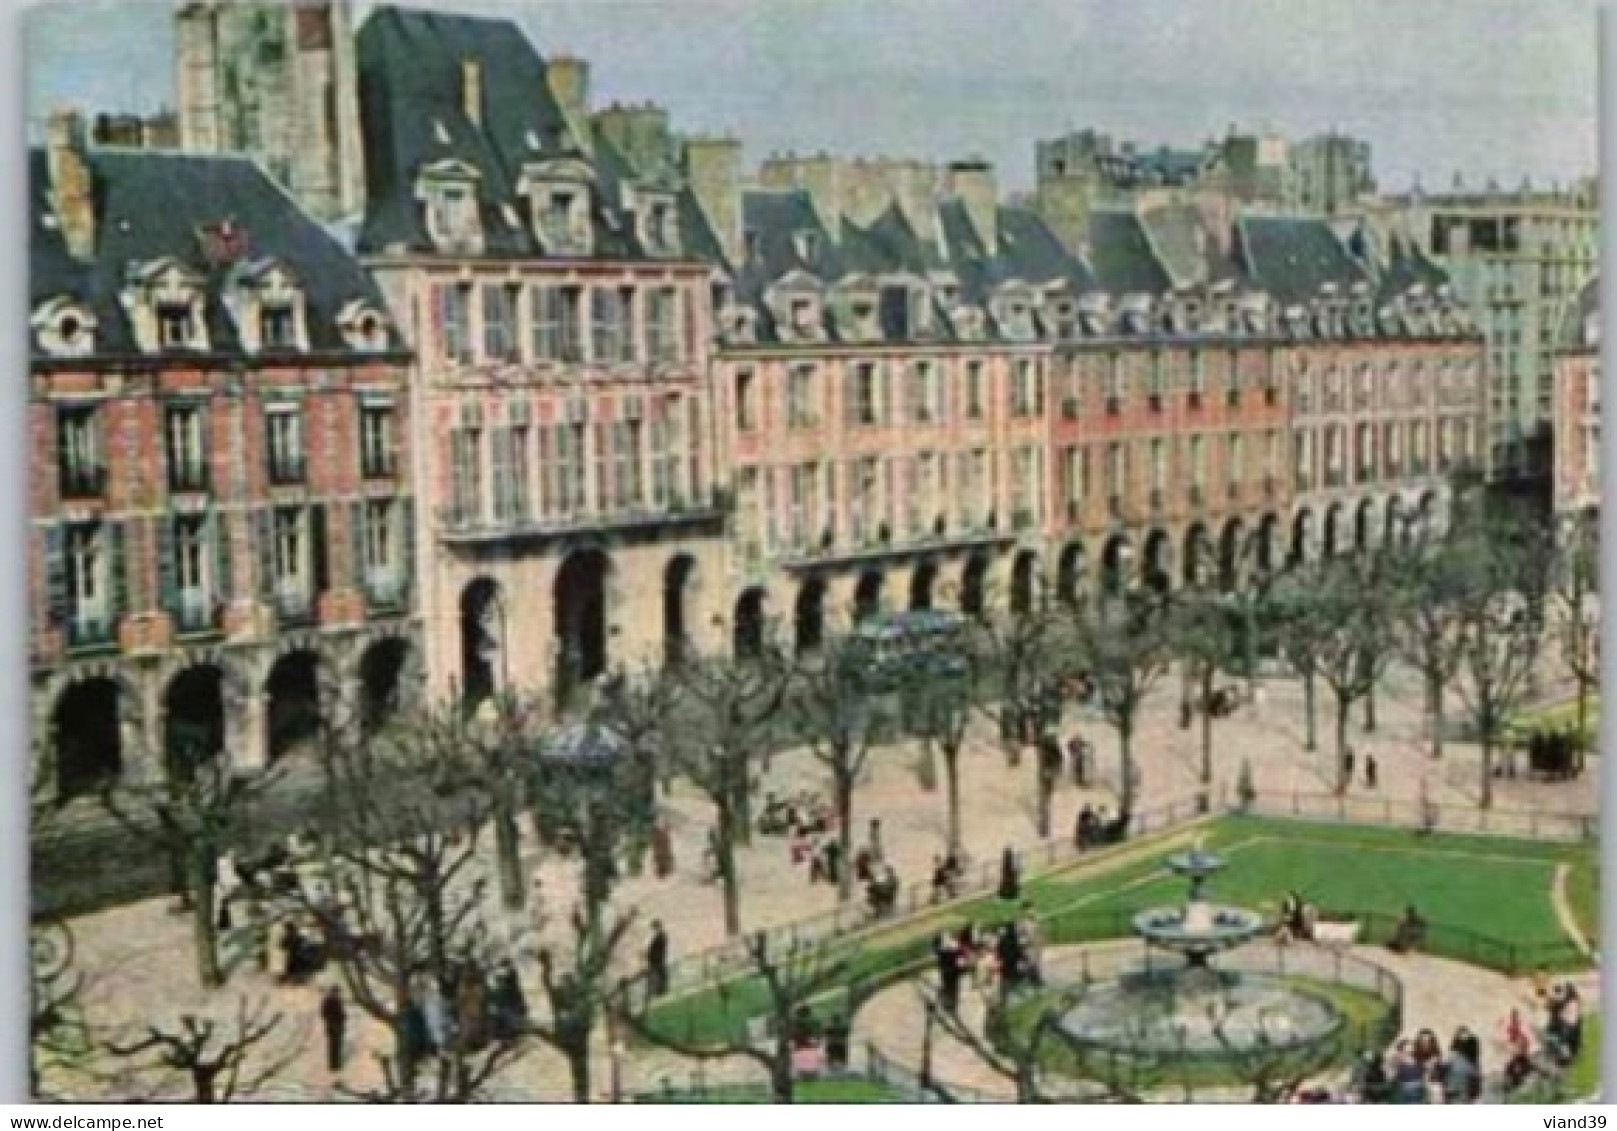 PARIS. -   Place Des Vosges. (1604)    Non  Circulée - Plätze